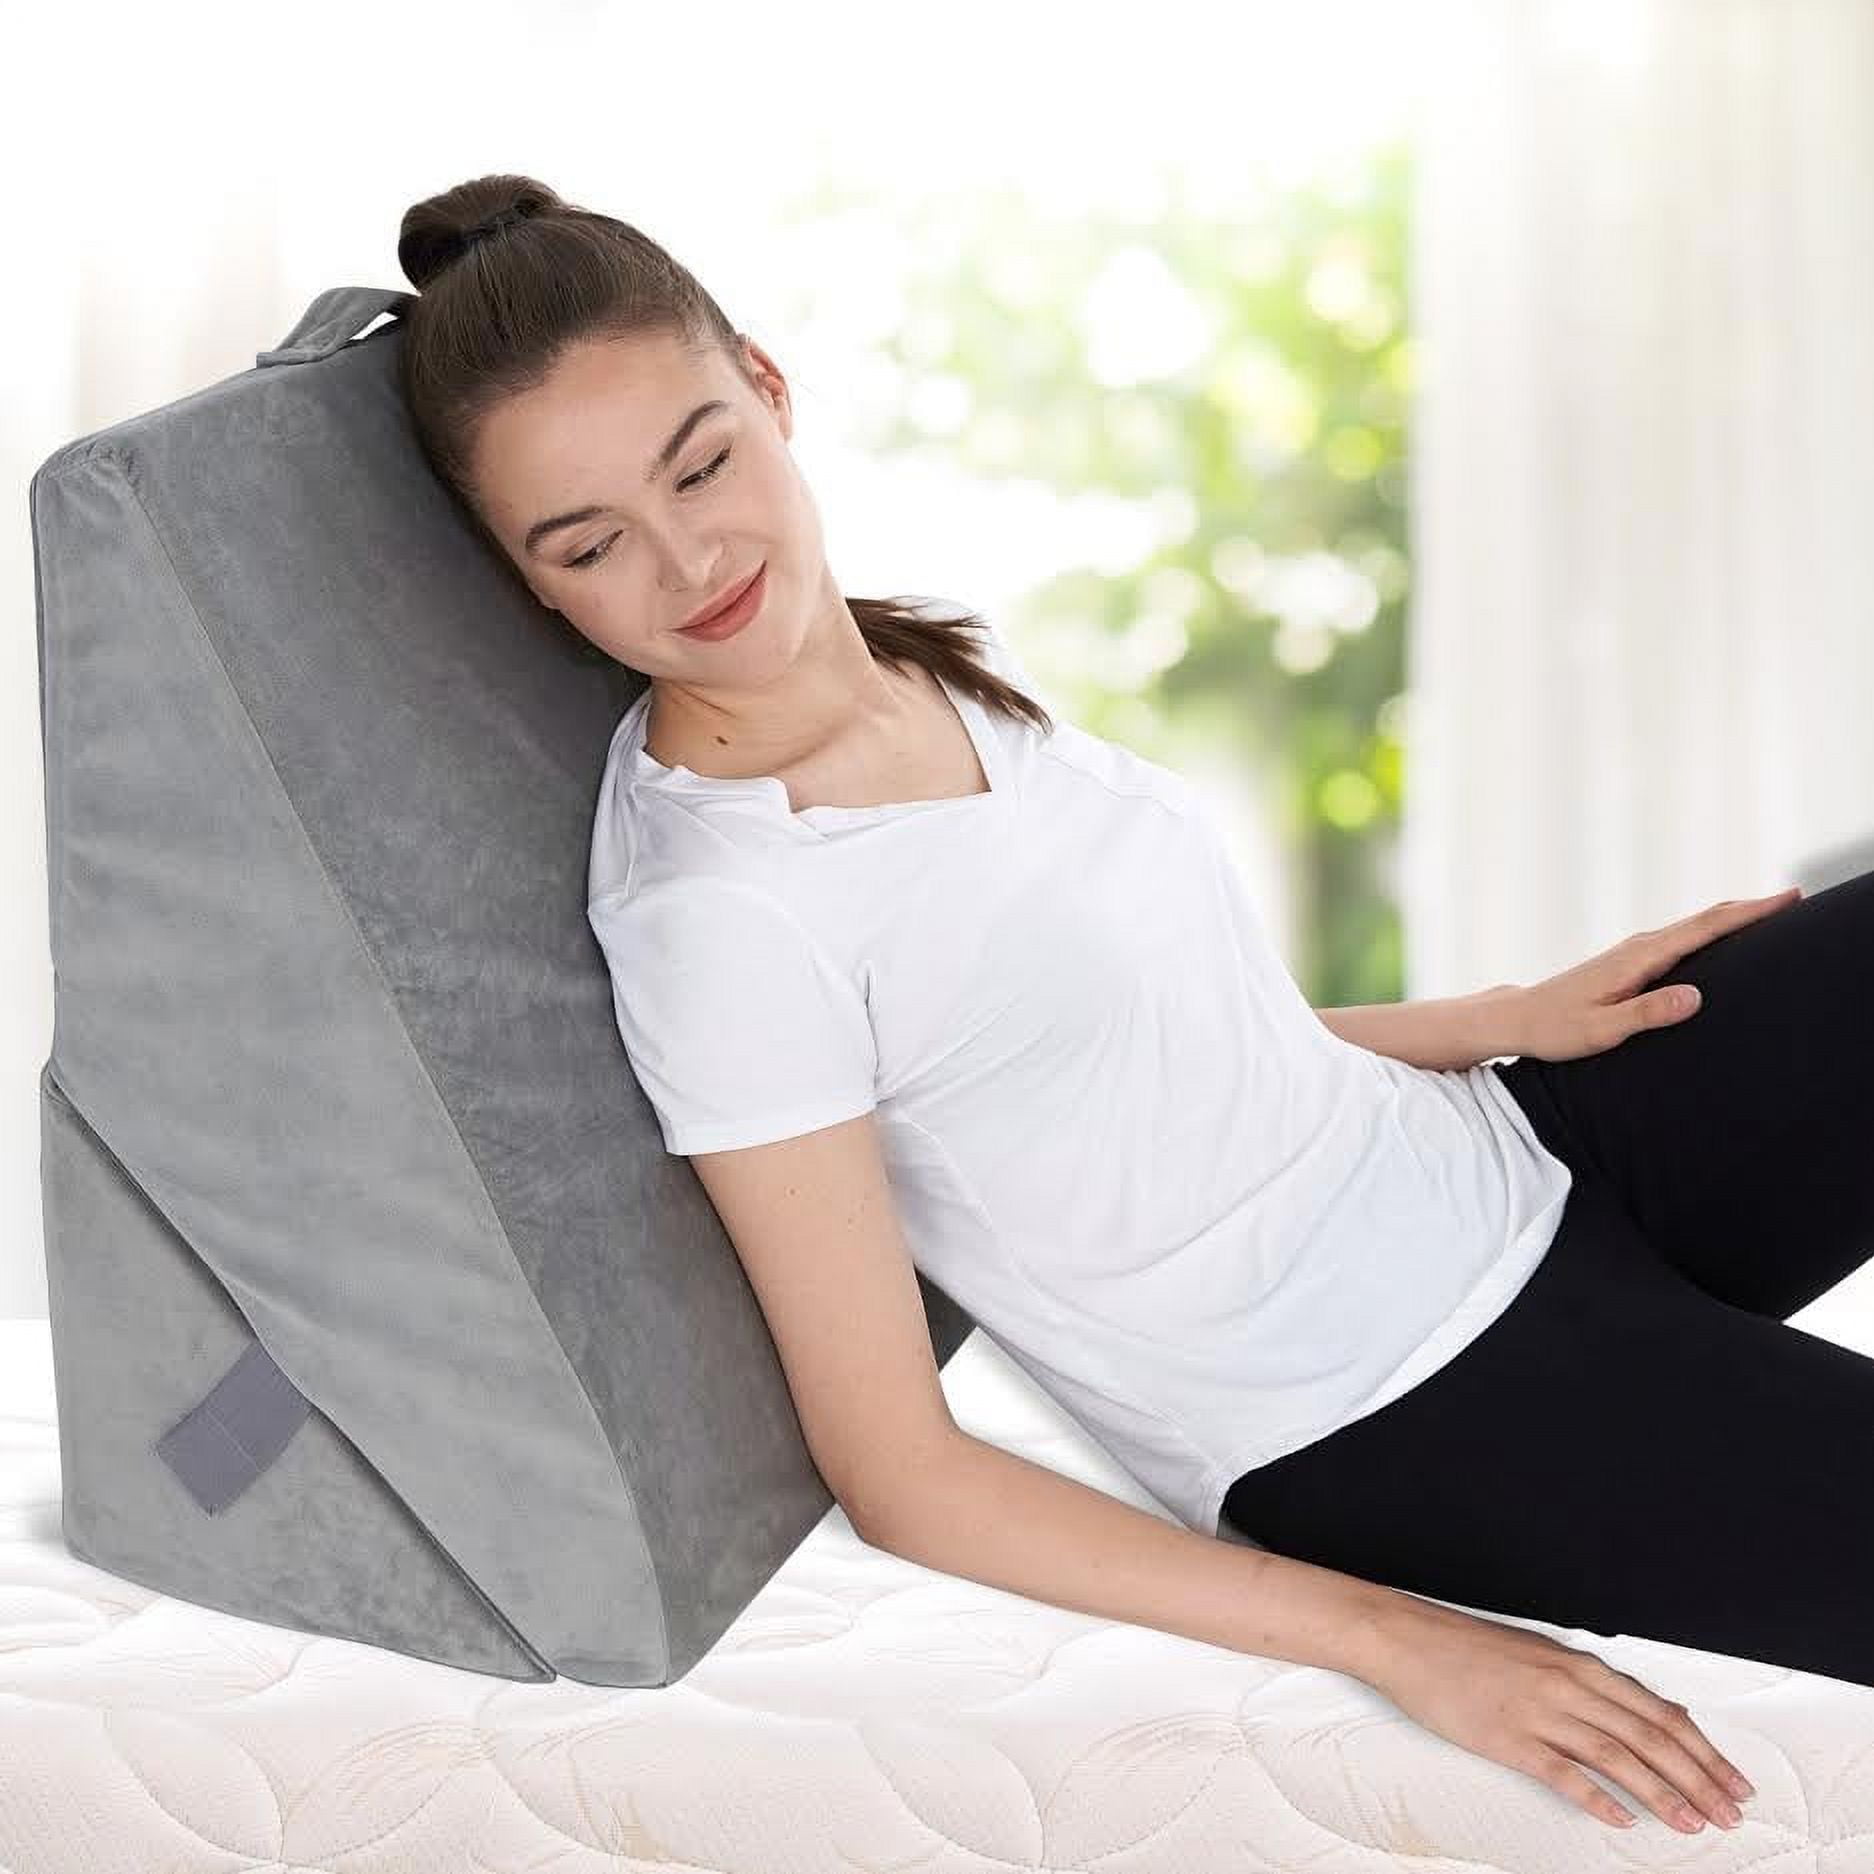 AllSett Health Bed Wedge Pillow - 10 Inch Wedge Pillow for